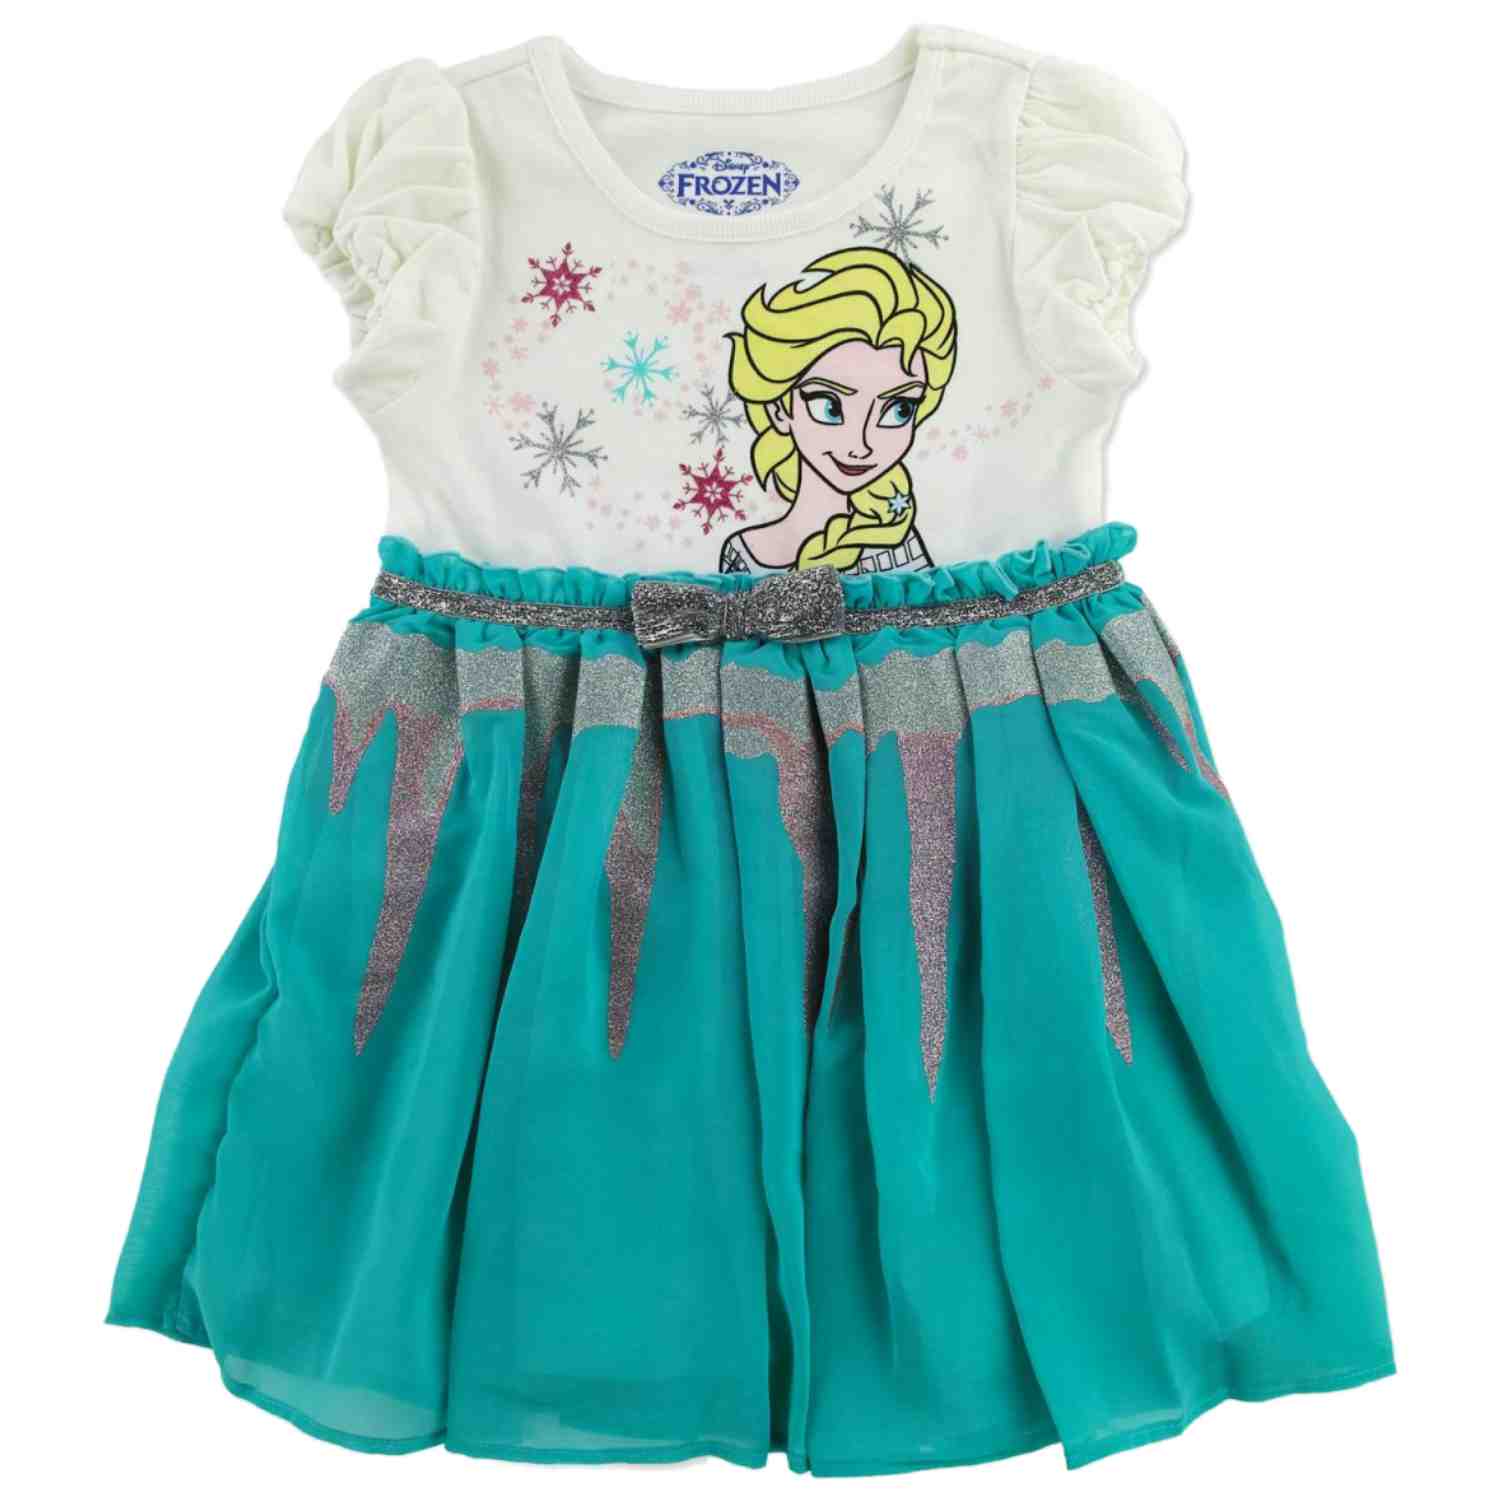 Disney Girls Frozen Princess Elsa Glittery Aqua Green Short Sleeve Dress